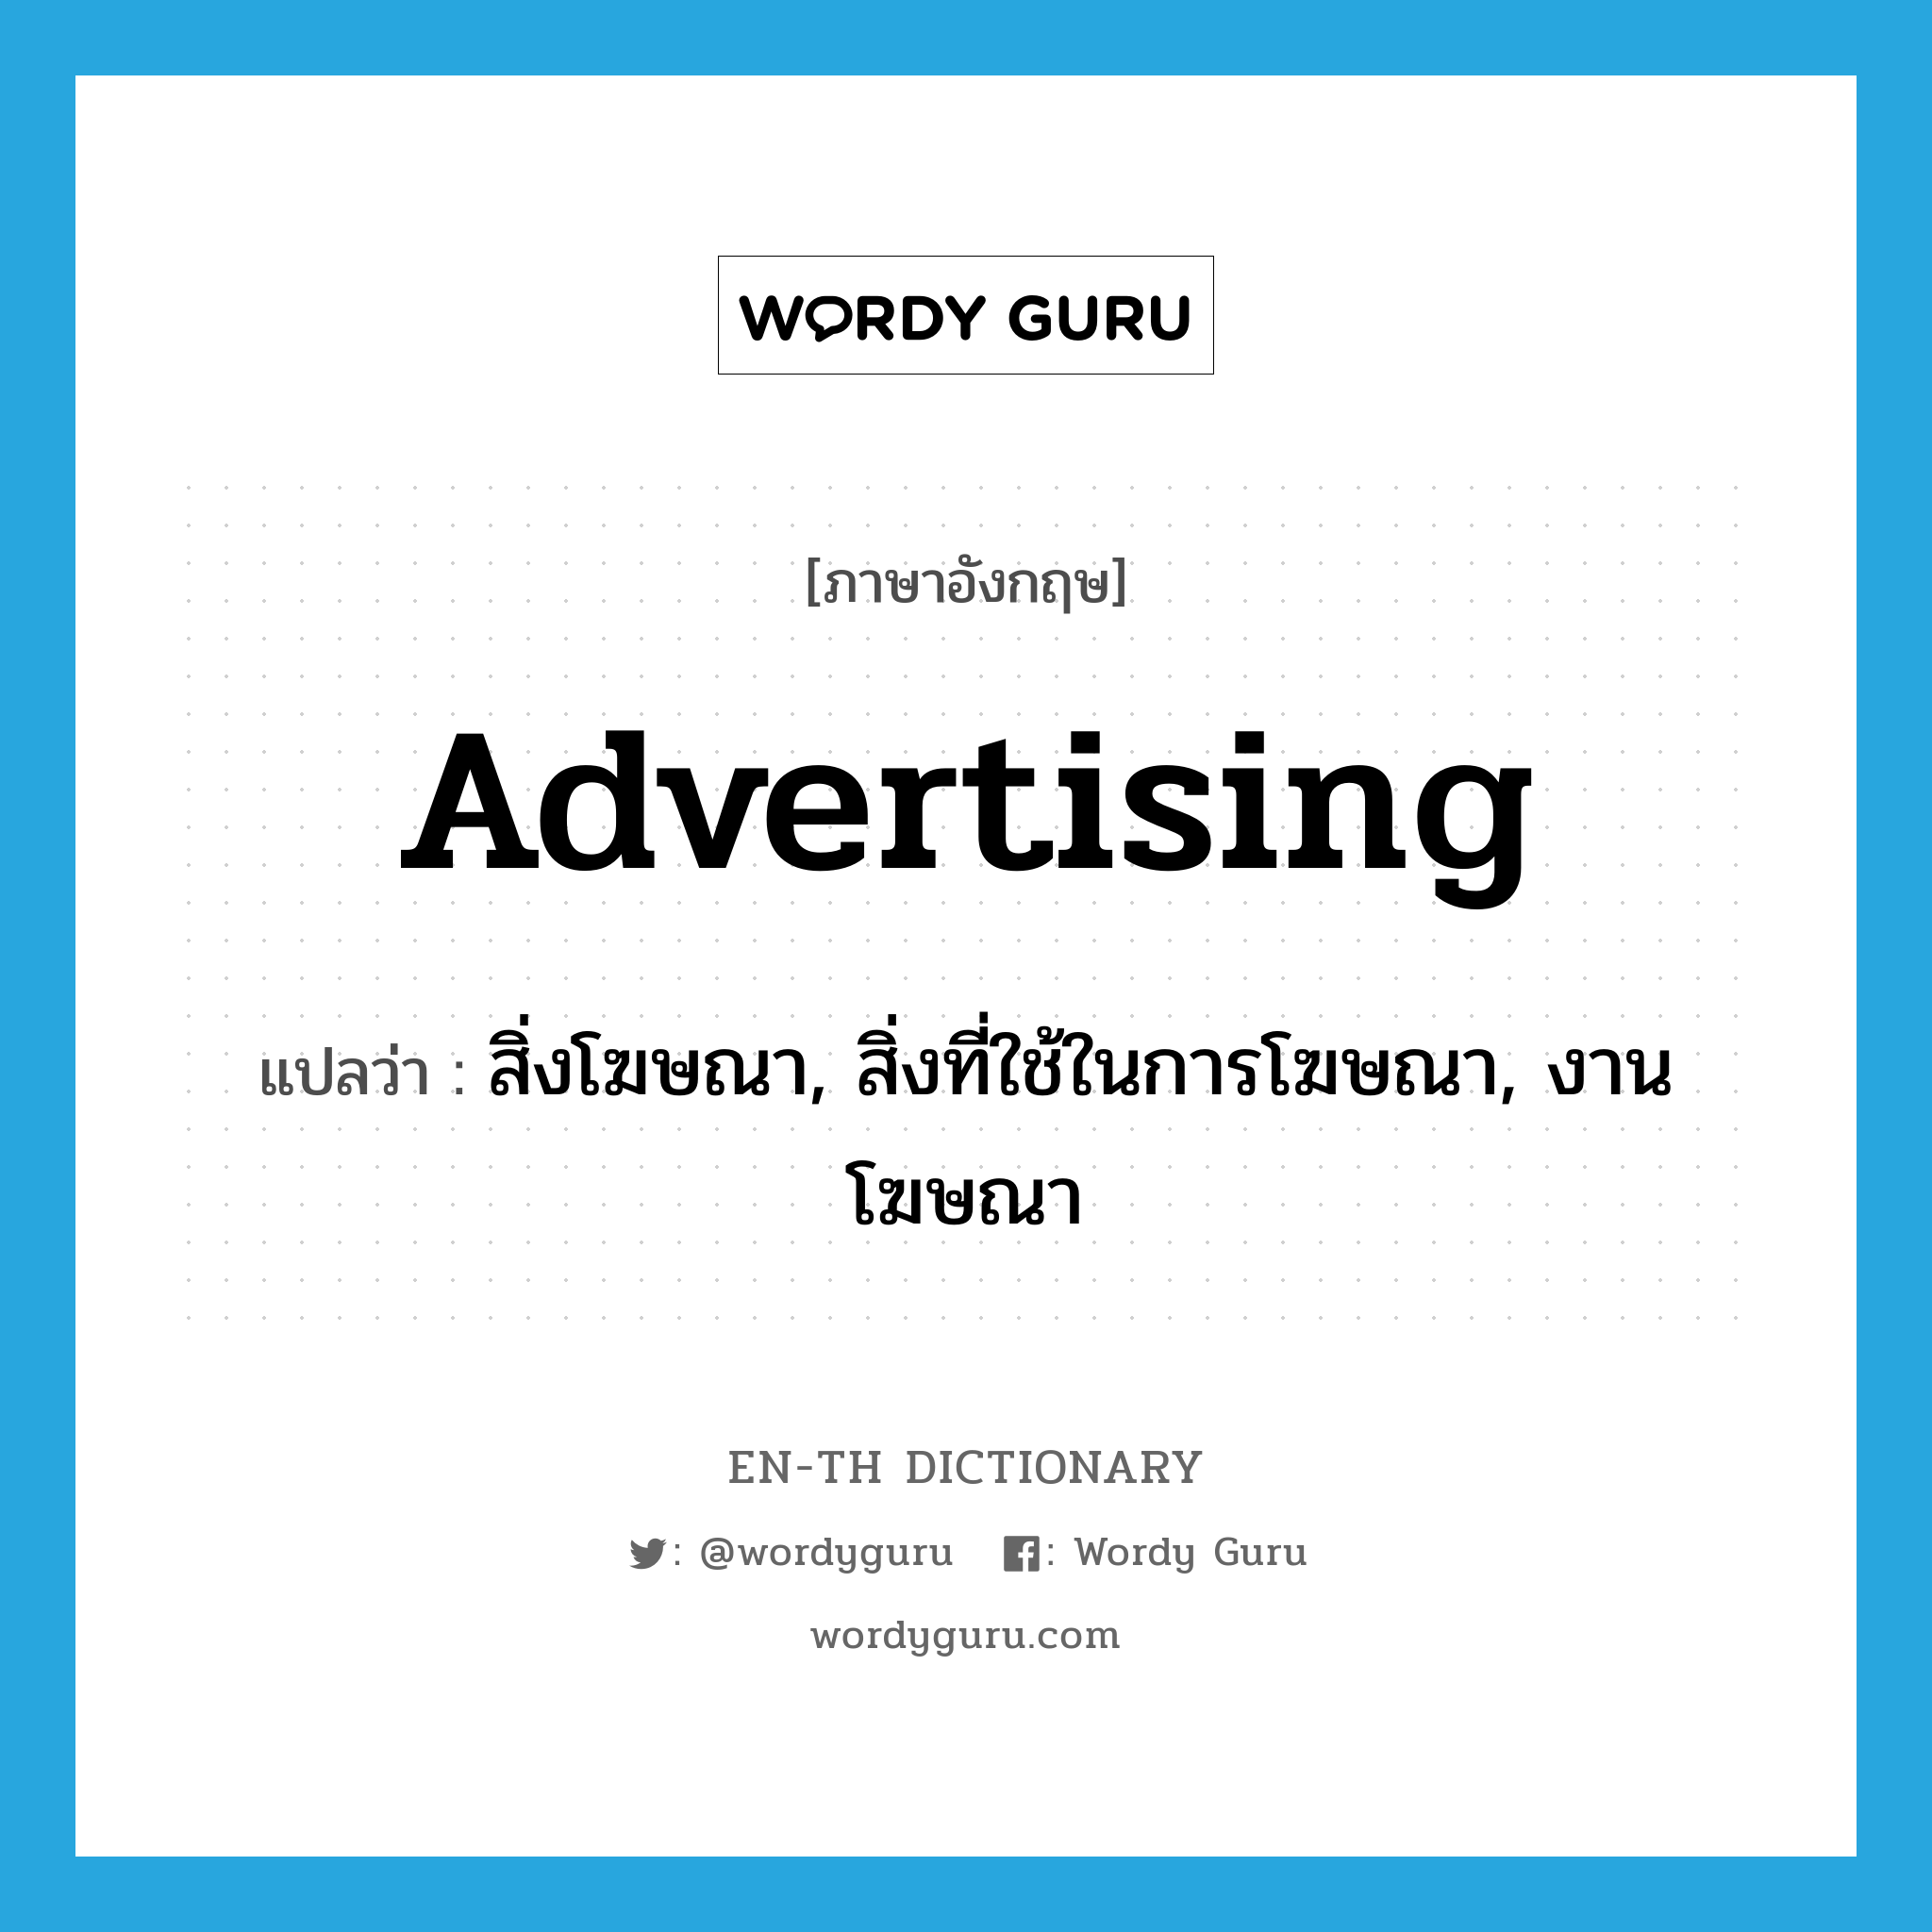 สิ่งโฆษณา, สิ่งที่ใช้ในการโฆษณา, งานโฆษณา ภาษาอังกฤษ?, คำศัพท์ภาษาอังกฤษ สิ่งโฆษณา, สิ่งที่ใช้ในการโฆษณา, งานโฆษณา แปลว่า advertising ประเภท N หมวด N